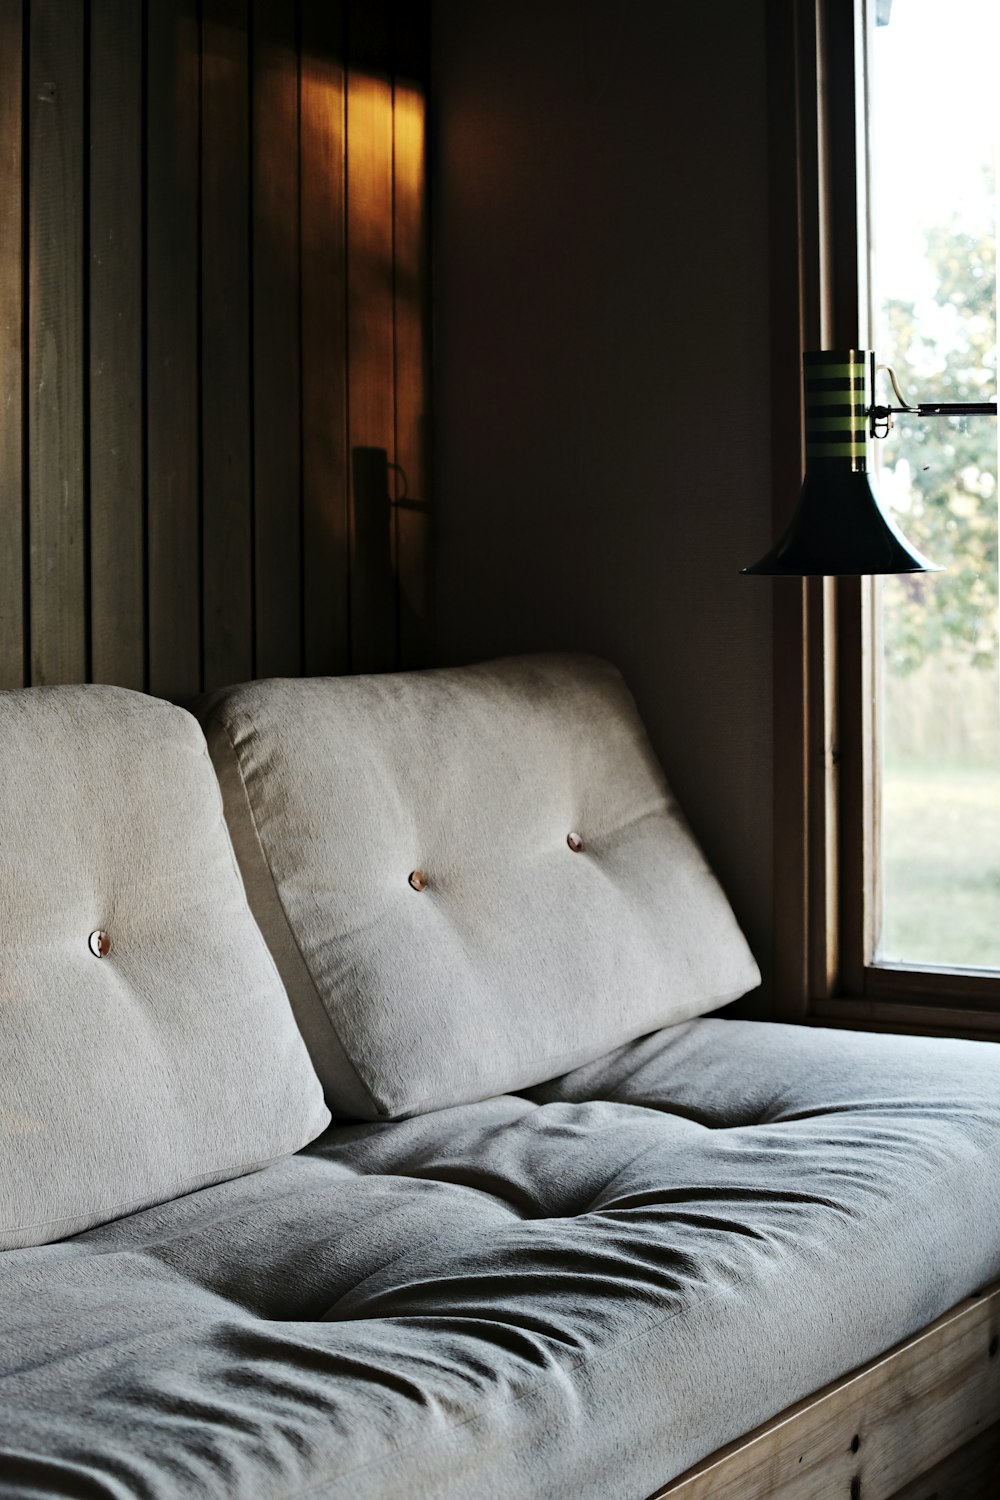 tufted gray sofa near window